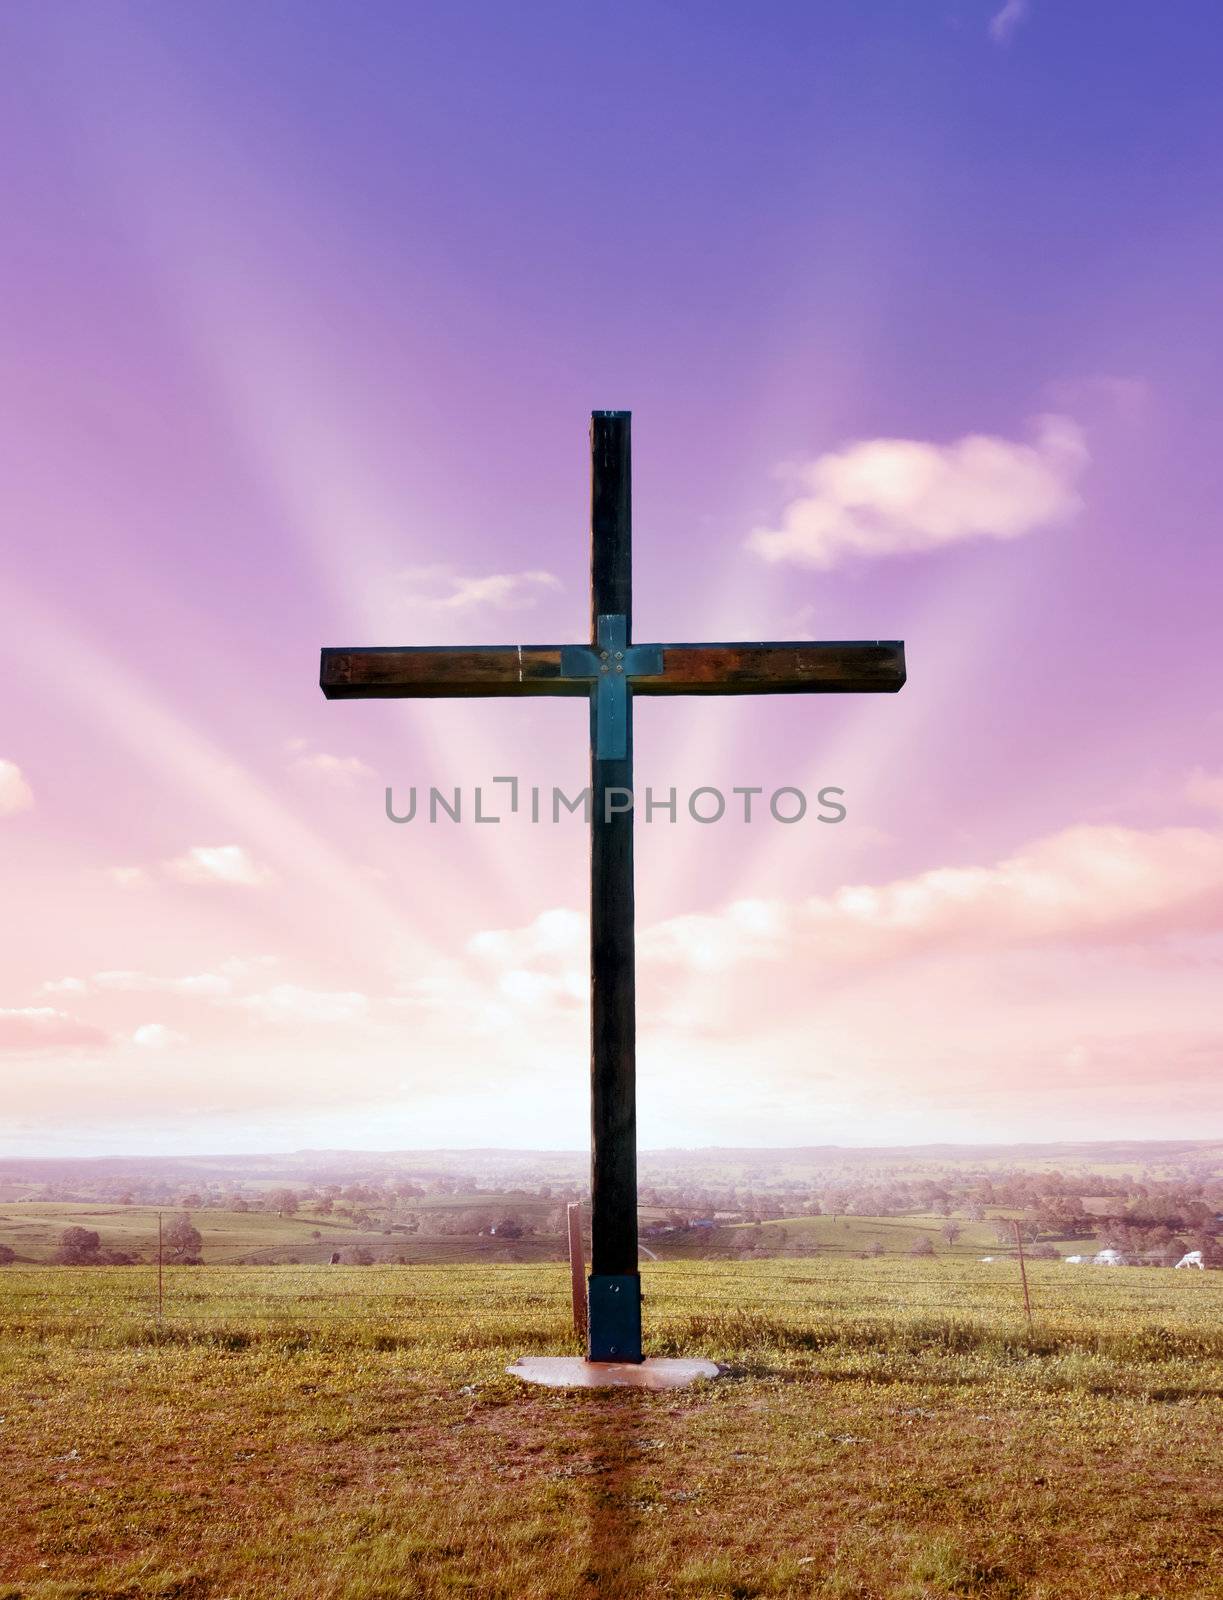 christian cross of christ at sunset or sunrise